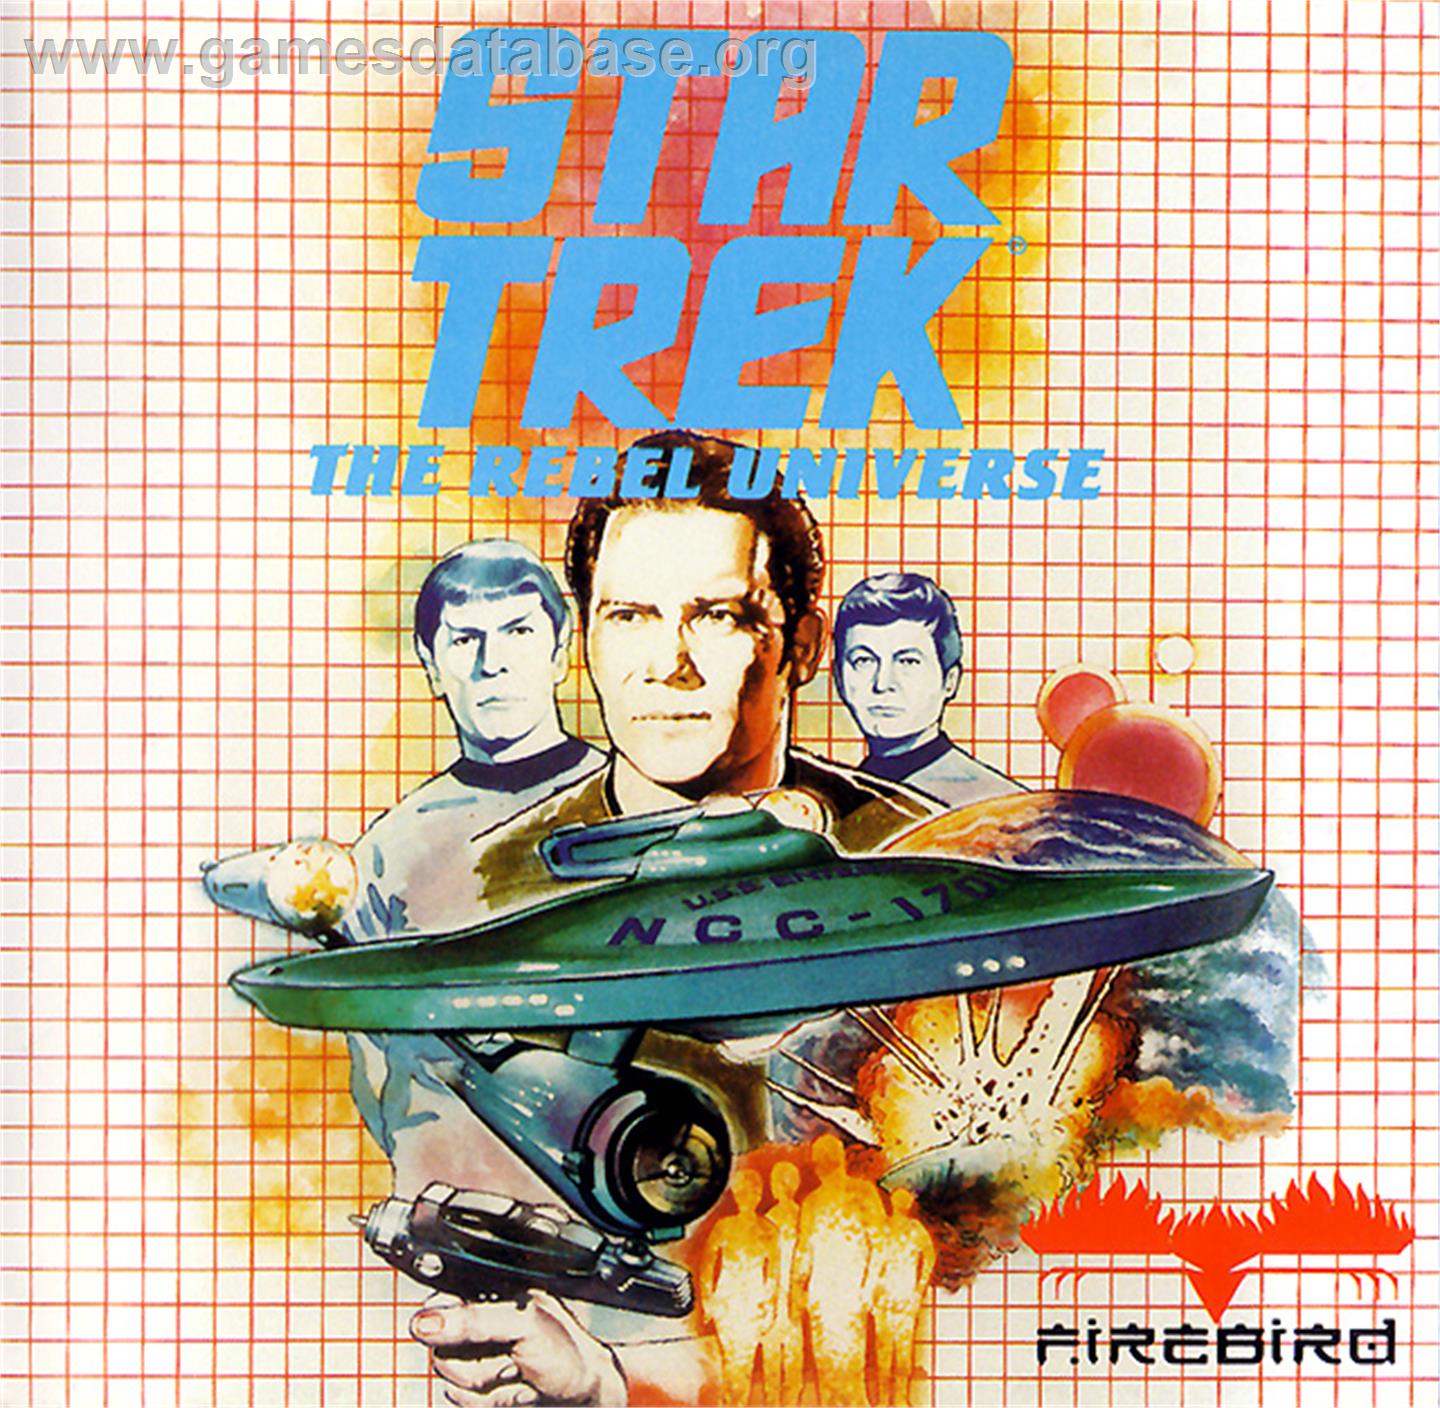 Star Trek The Rebel Universe - Atari ST - Artwork - Box